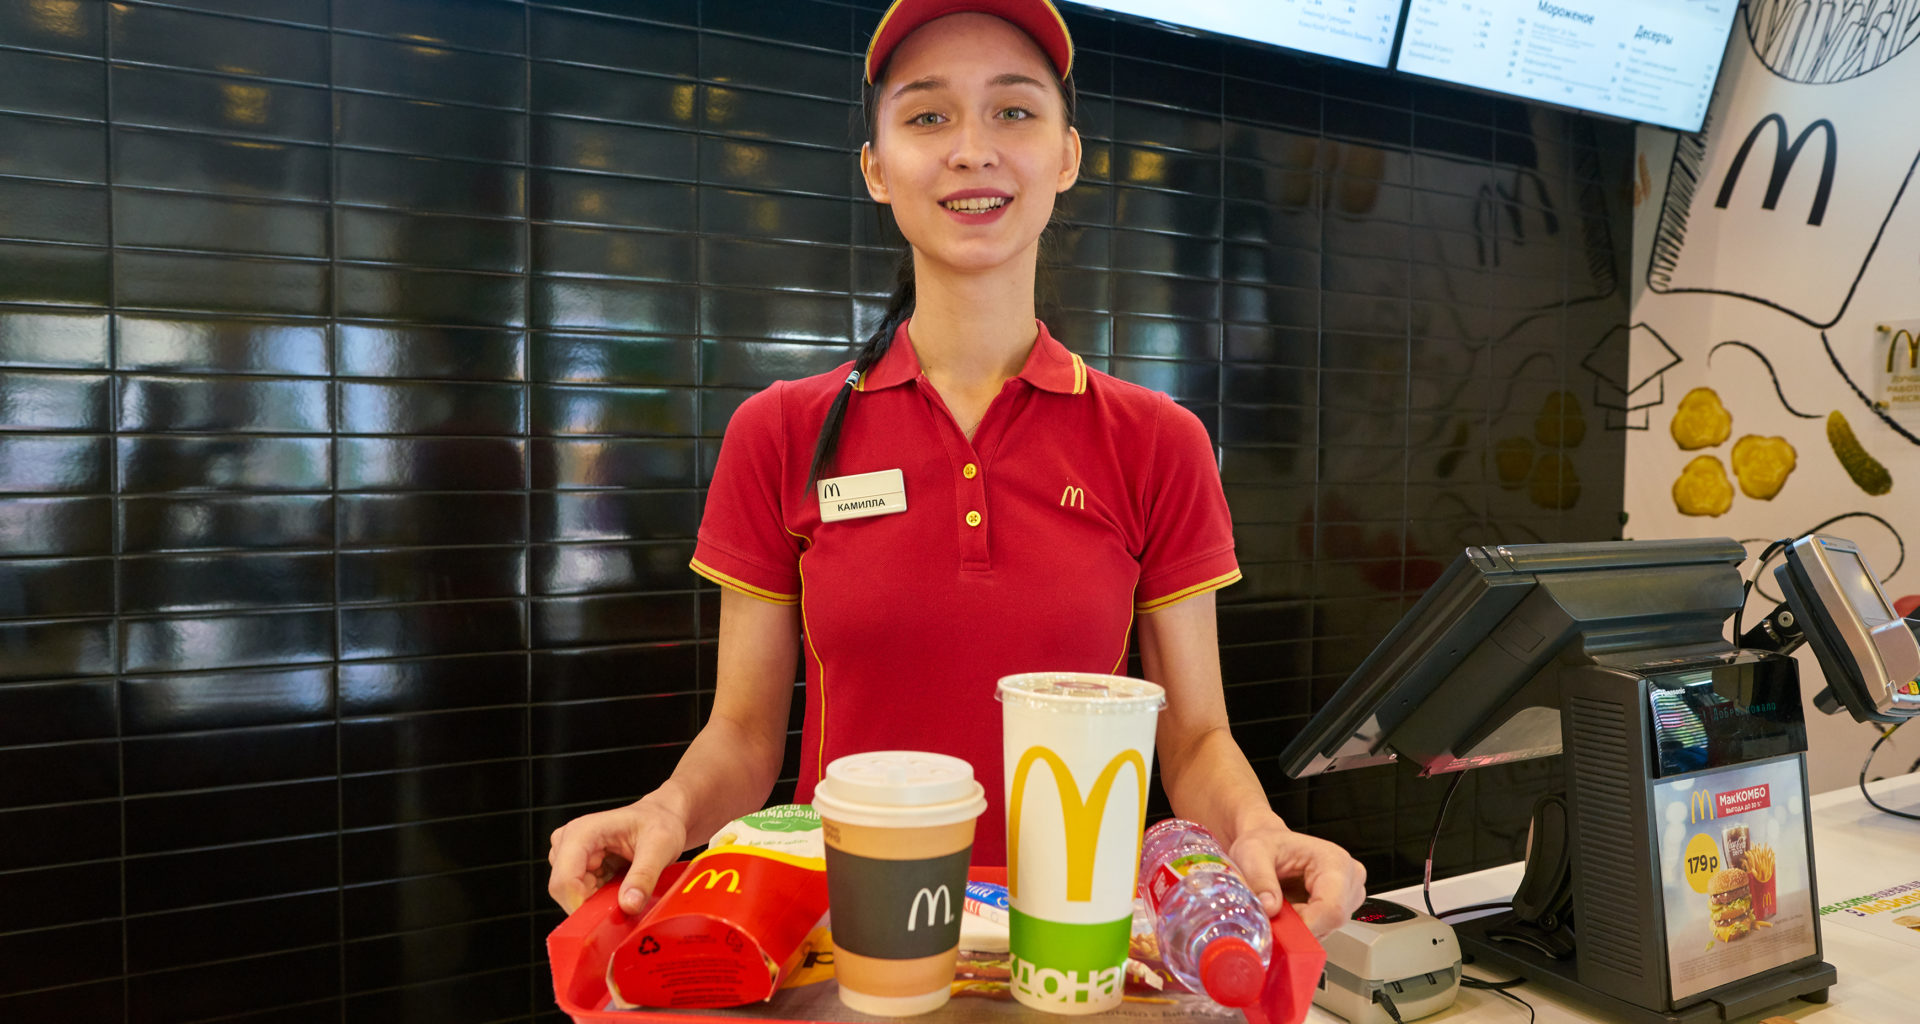 McDonald's Job Interview Questions Top 10 Questions & AnswersDrjobpro.com